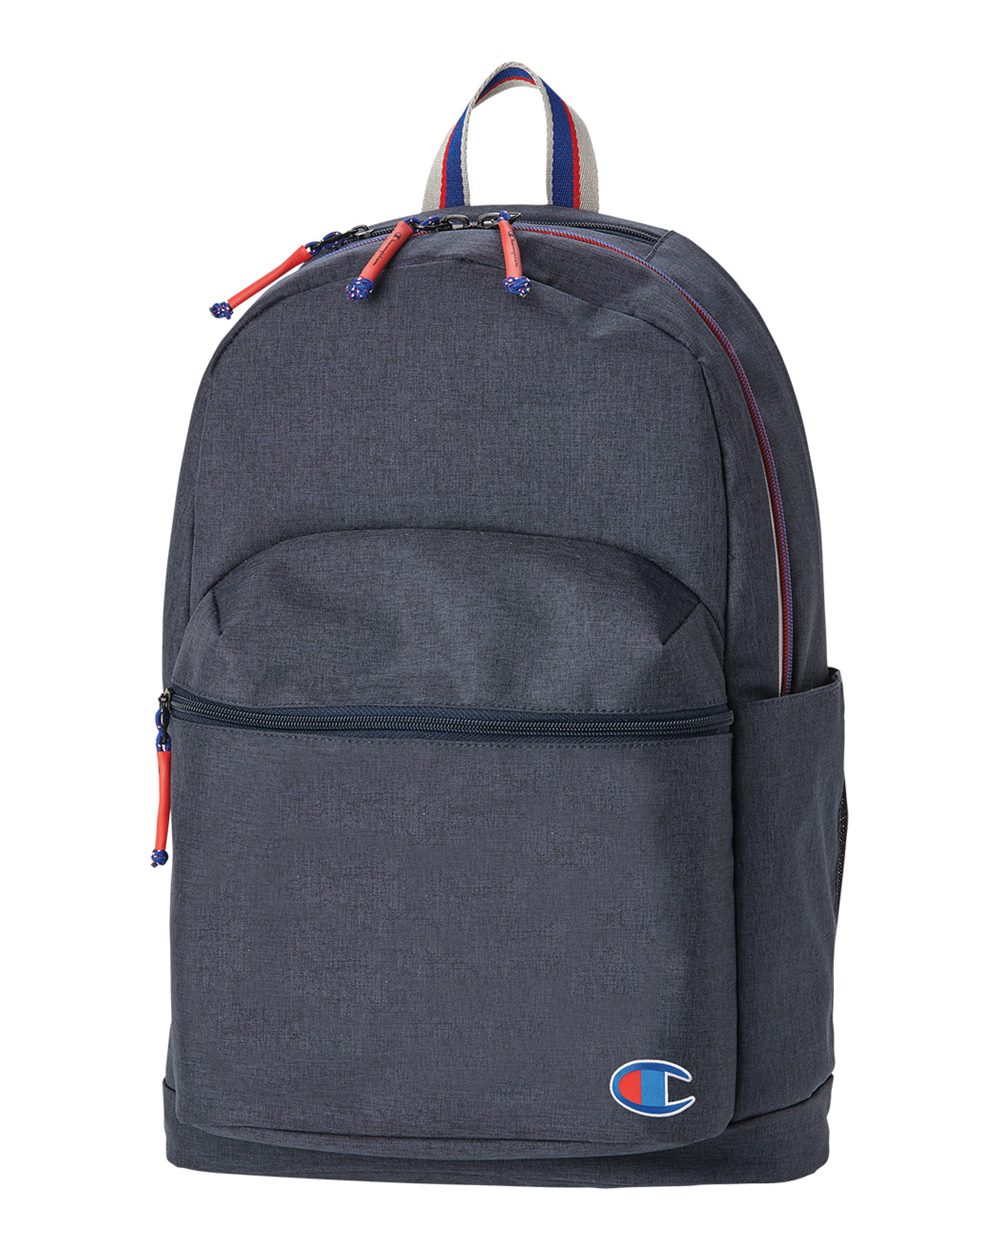 Champion CS1002 - 21L Backpack $34.99